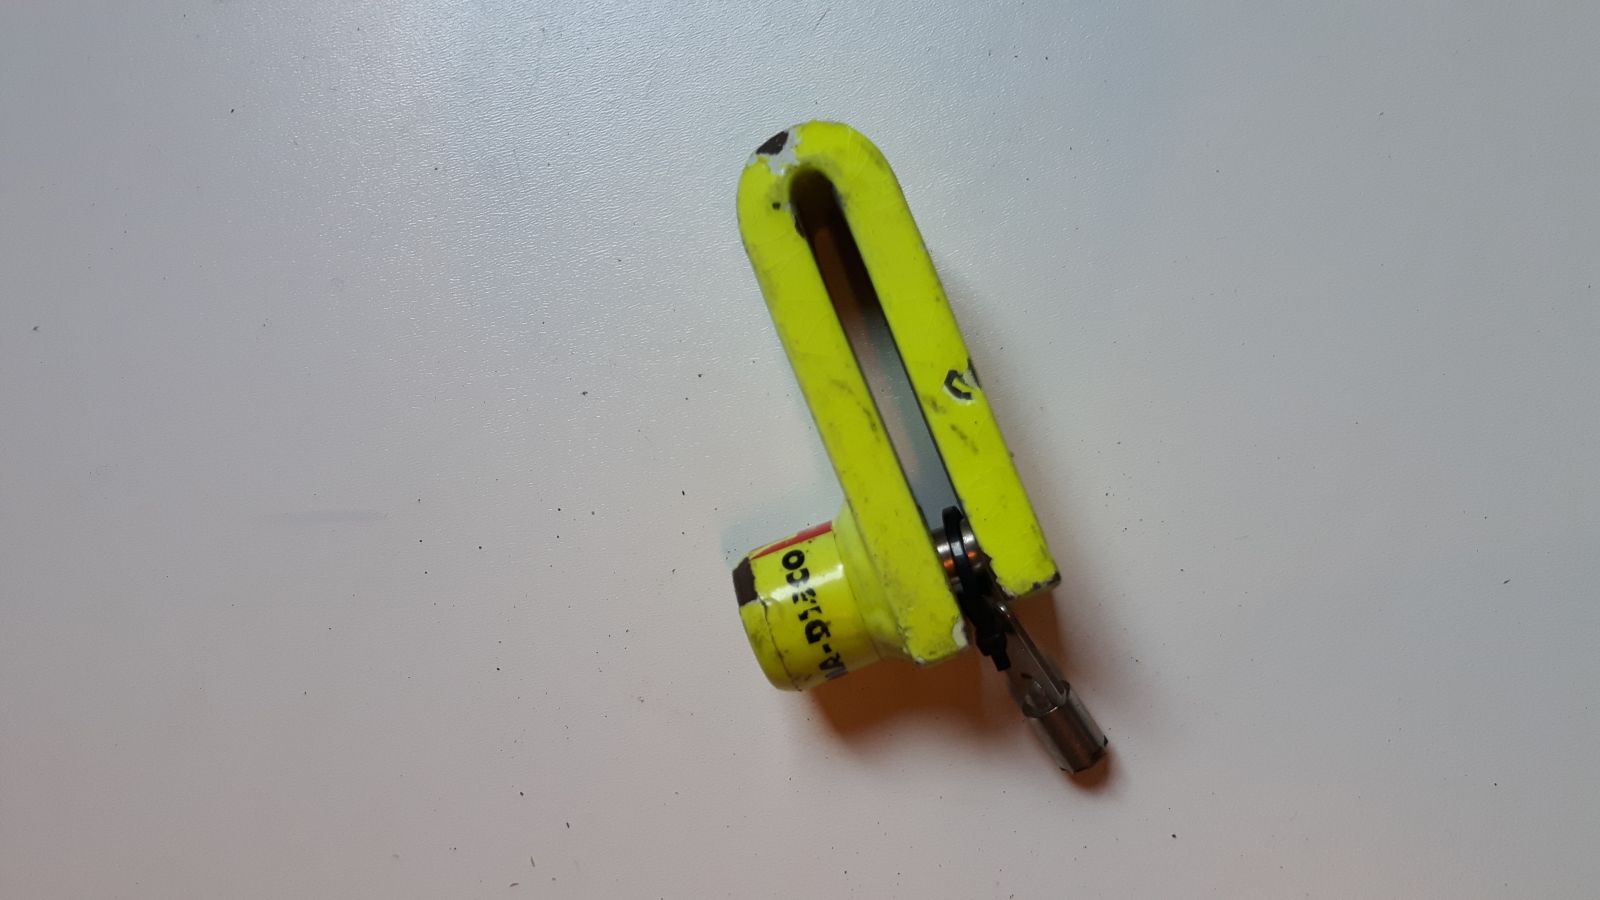 brake lock yellow 1 key